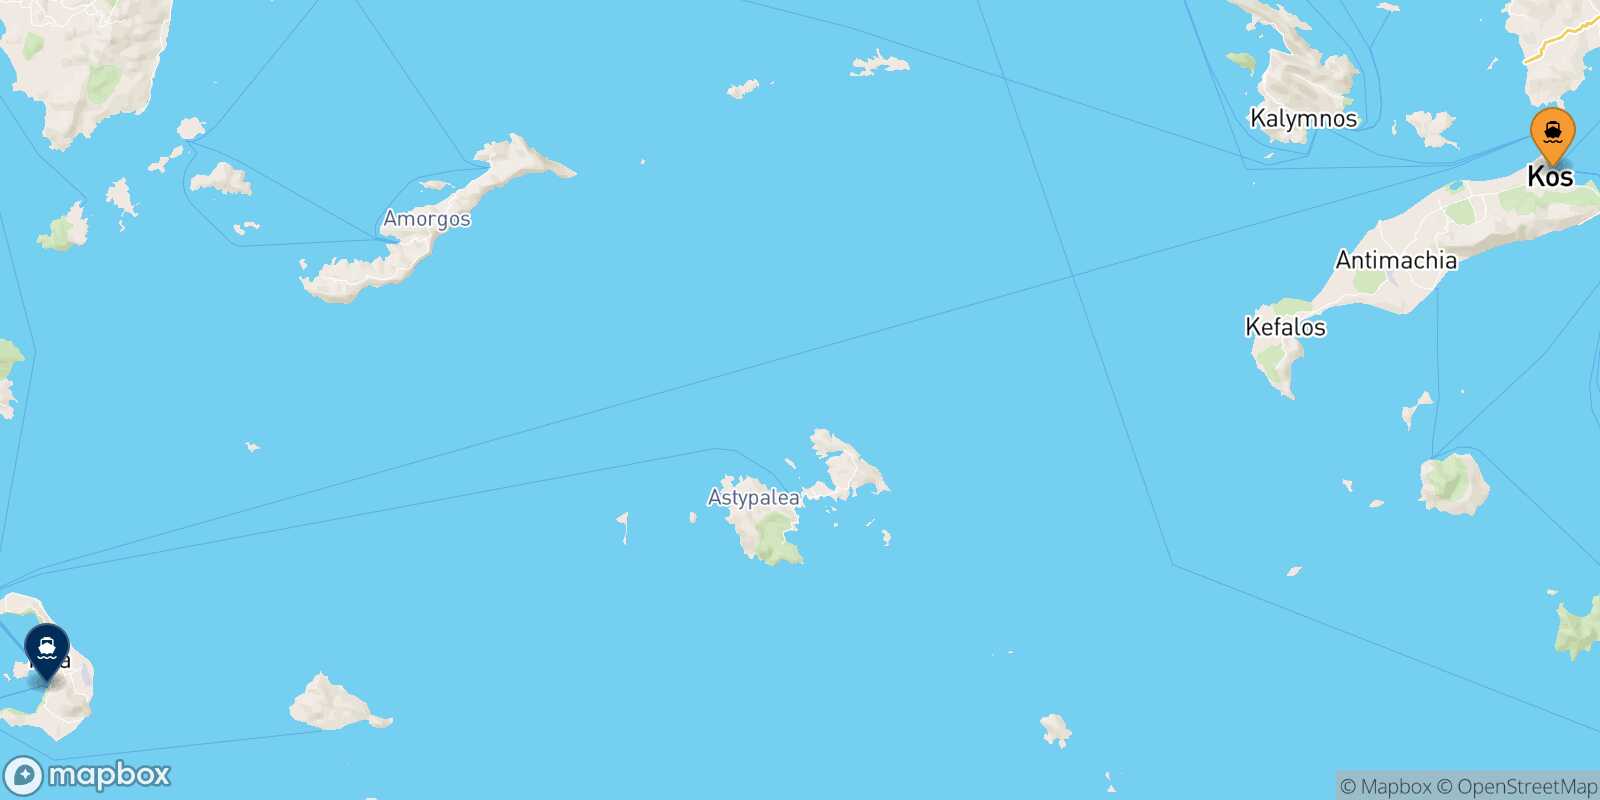 Kos Thira (Santorini) route map